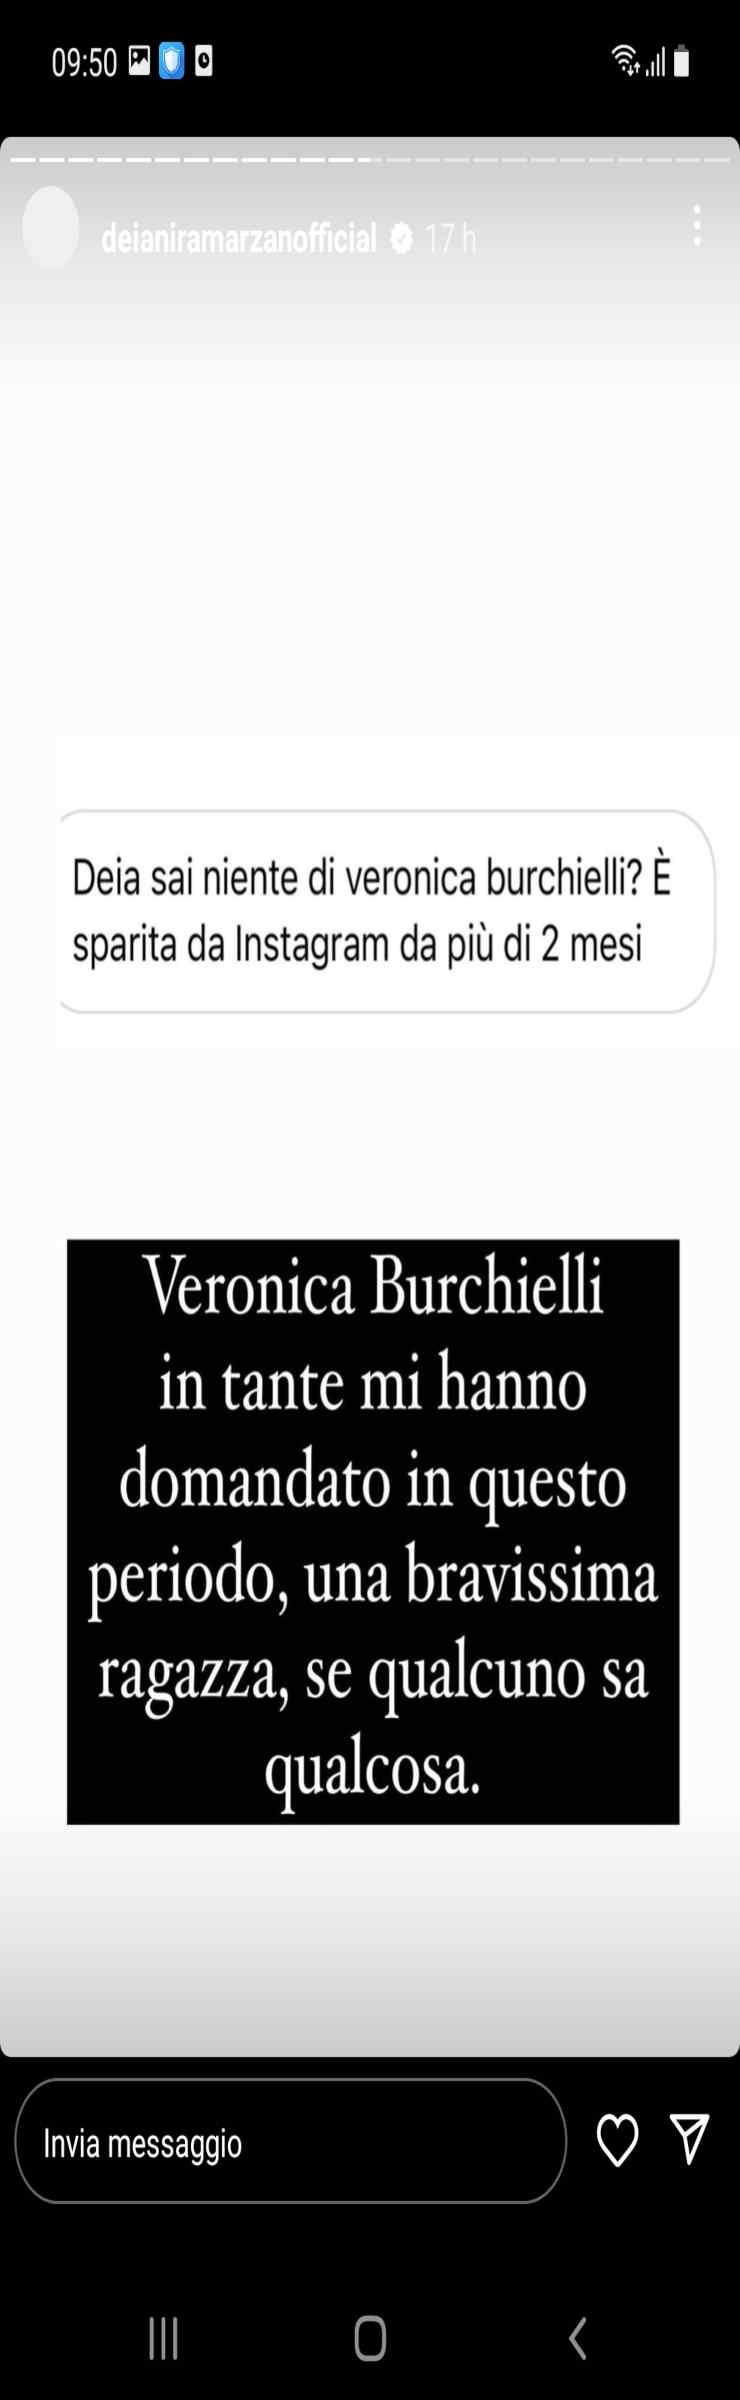 Deianira - Marzano - Veronica - Burchielli - Altranotizia